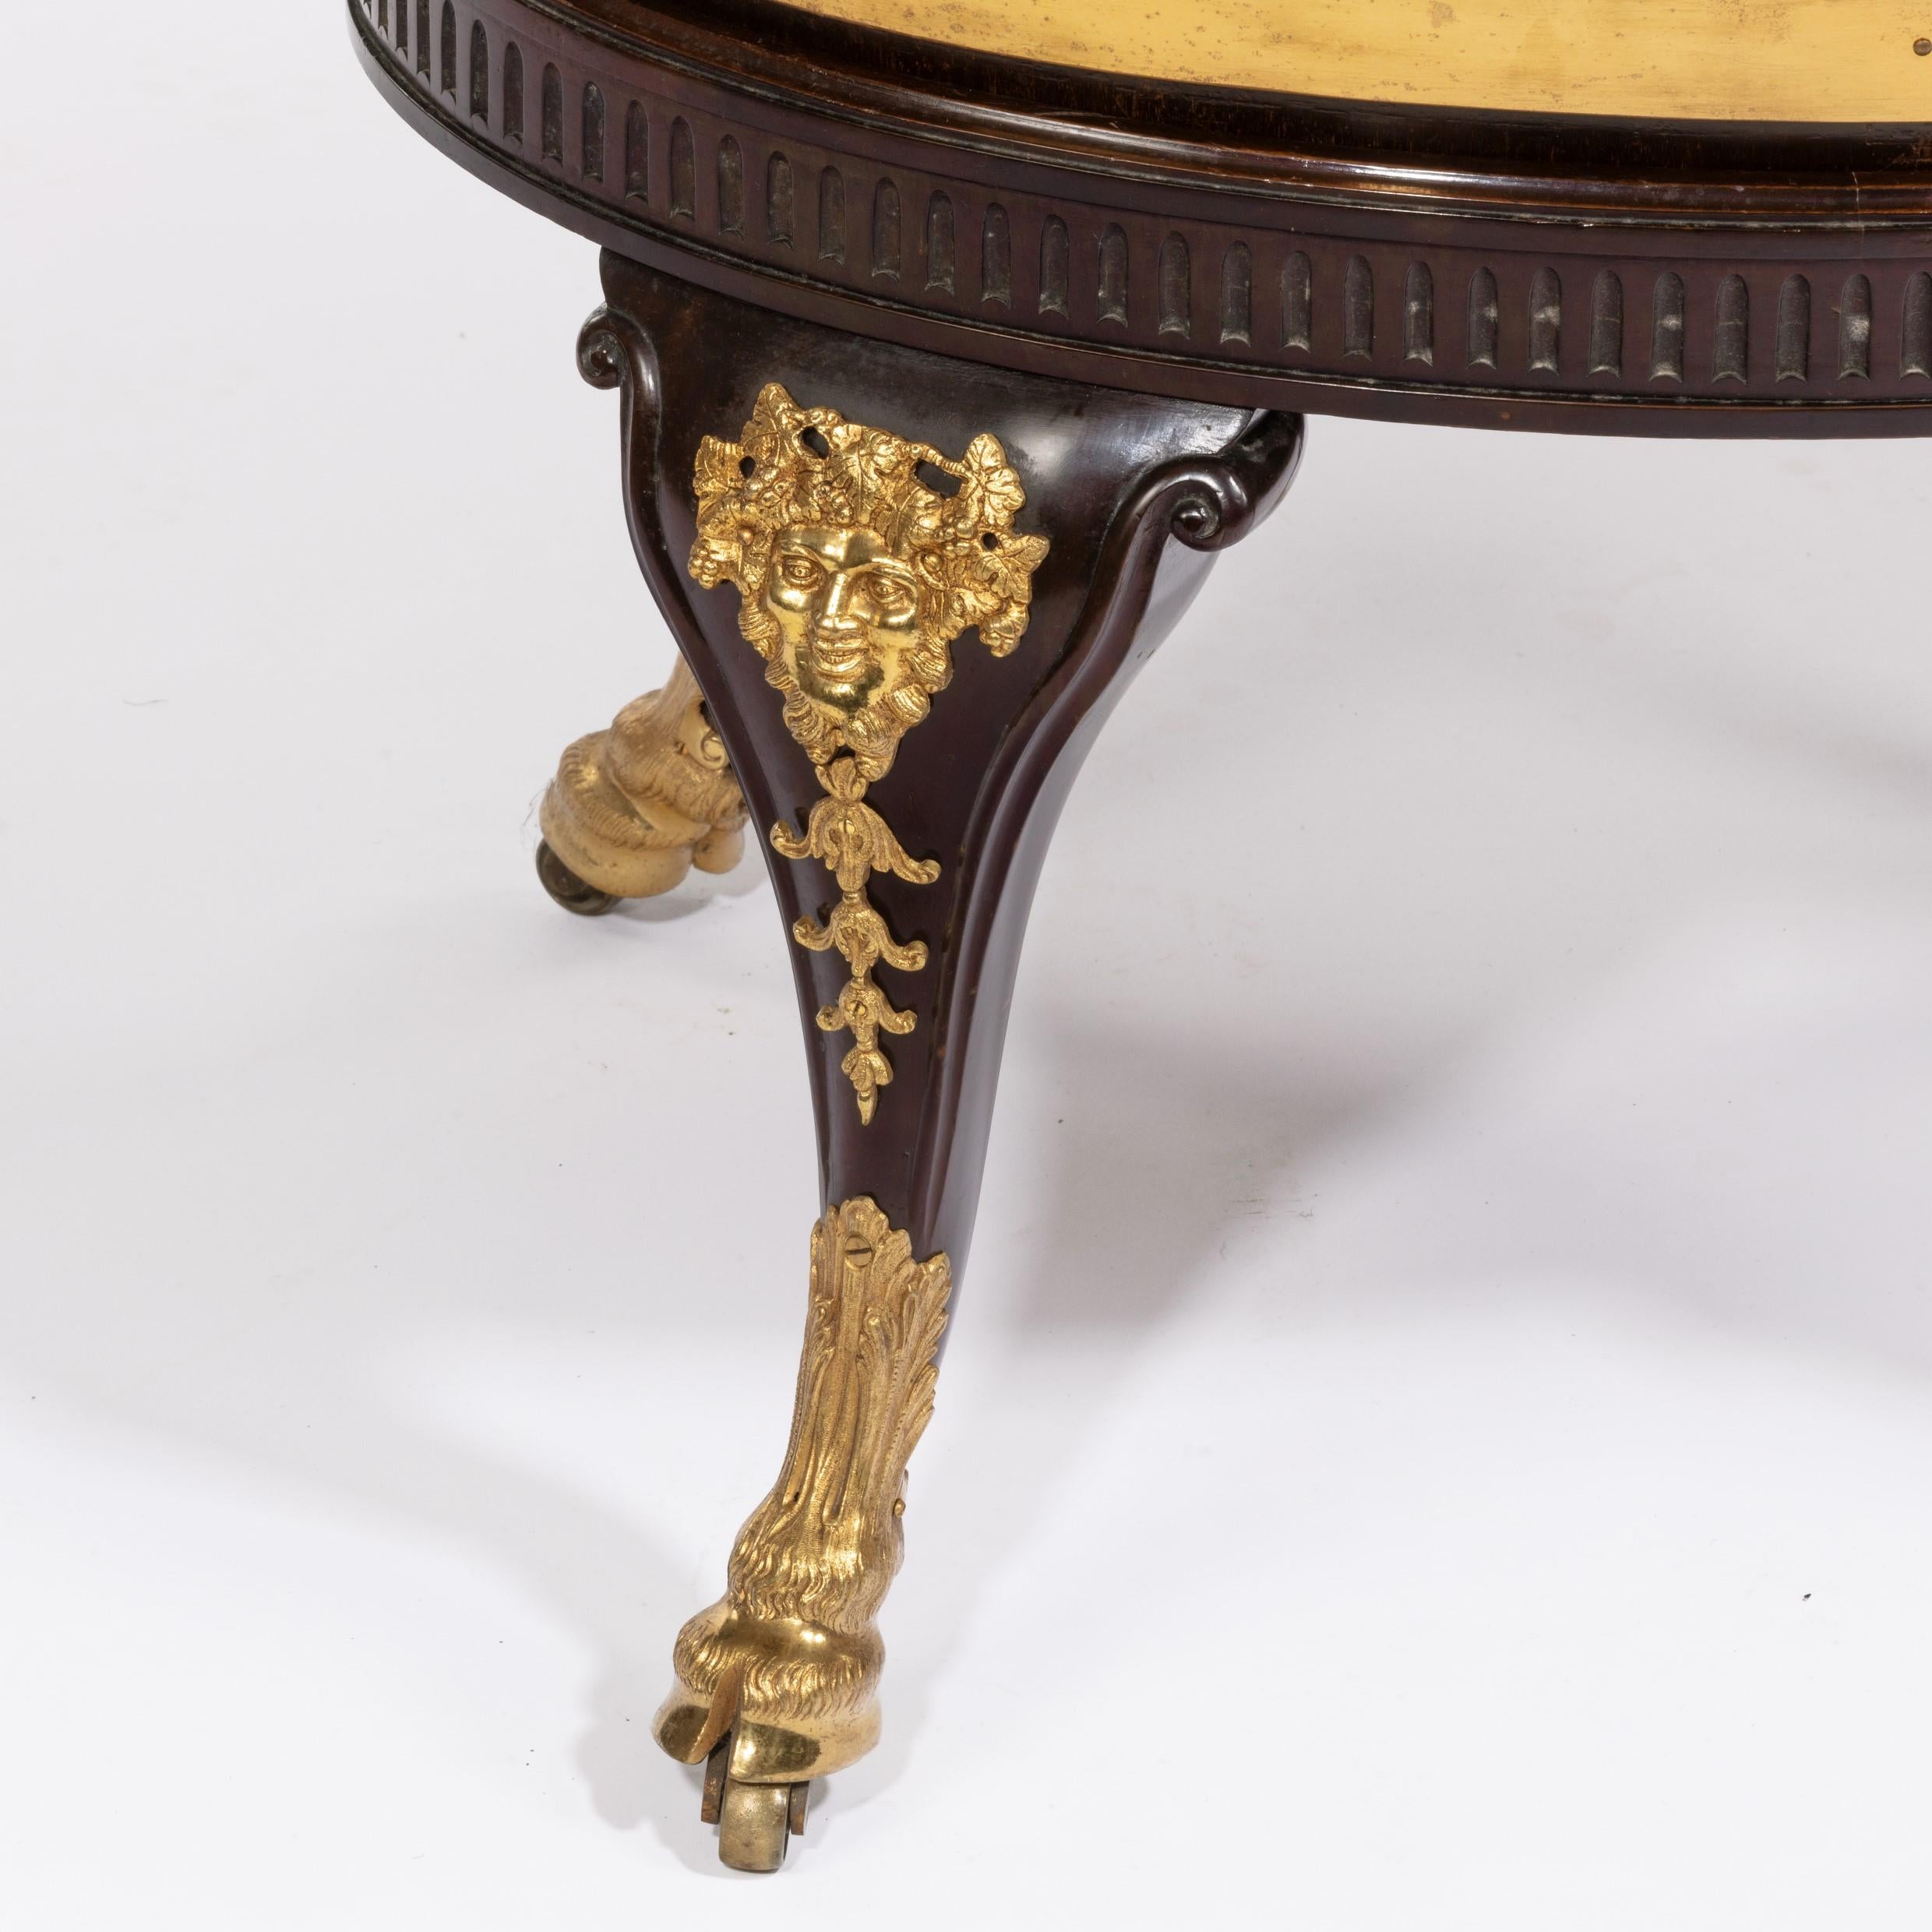 Ein feiner viktorianischer Mahagoni-Weinkühler, der Gillows zugeschrieben wird, von zylindrischer Form, die mit zwei Messingbändern unter einer zarten Bordüre aus Blumengirlanden versehen ist, mit Ziegenmaske und Ringgriffen, die Cabriole-Beine sind